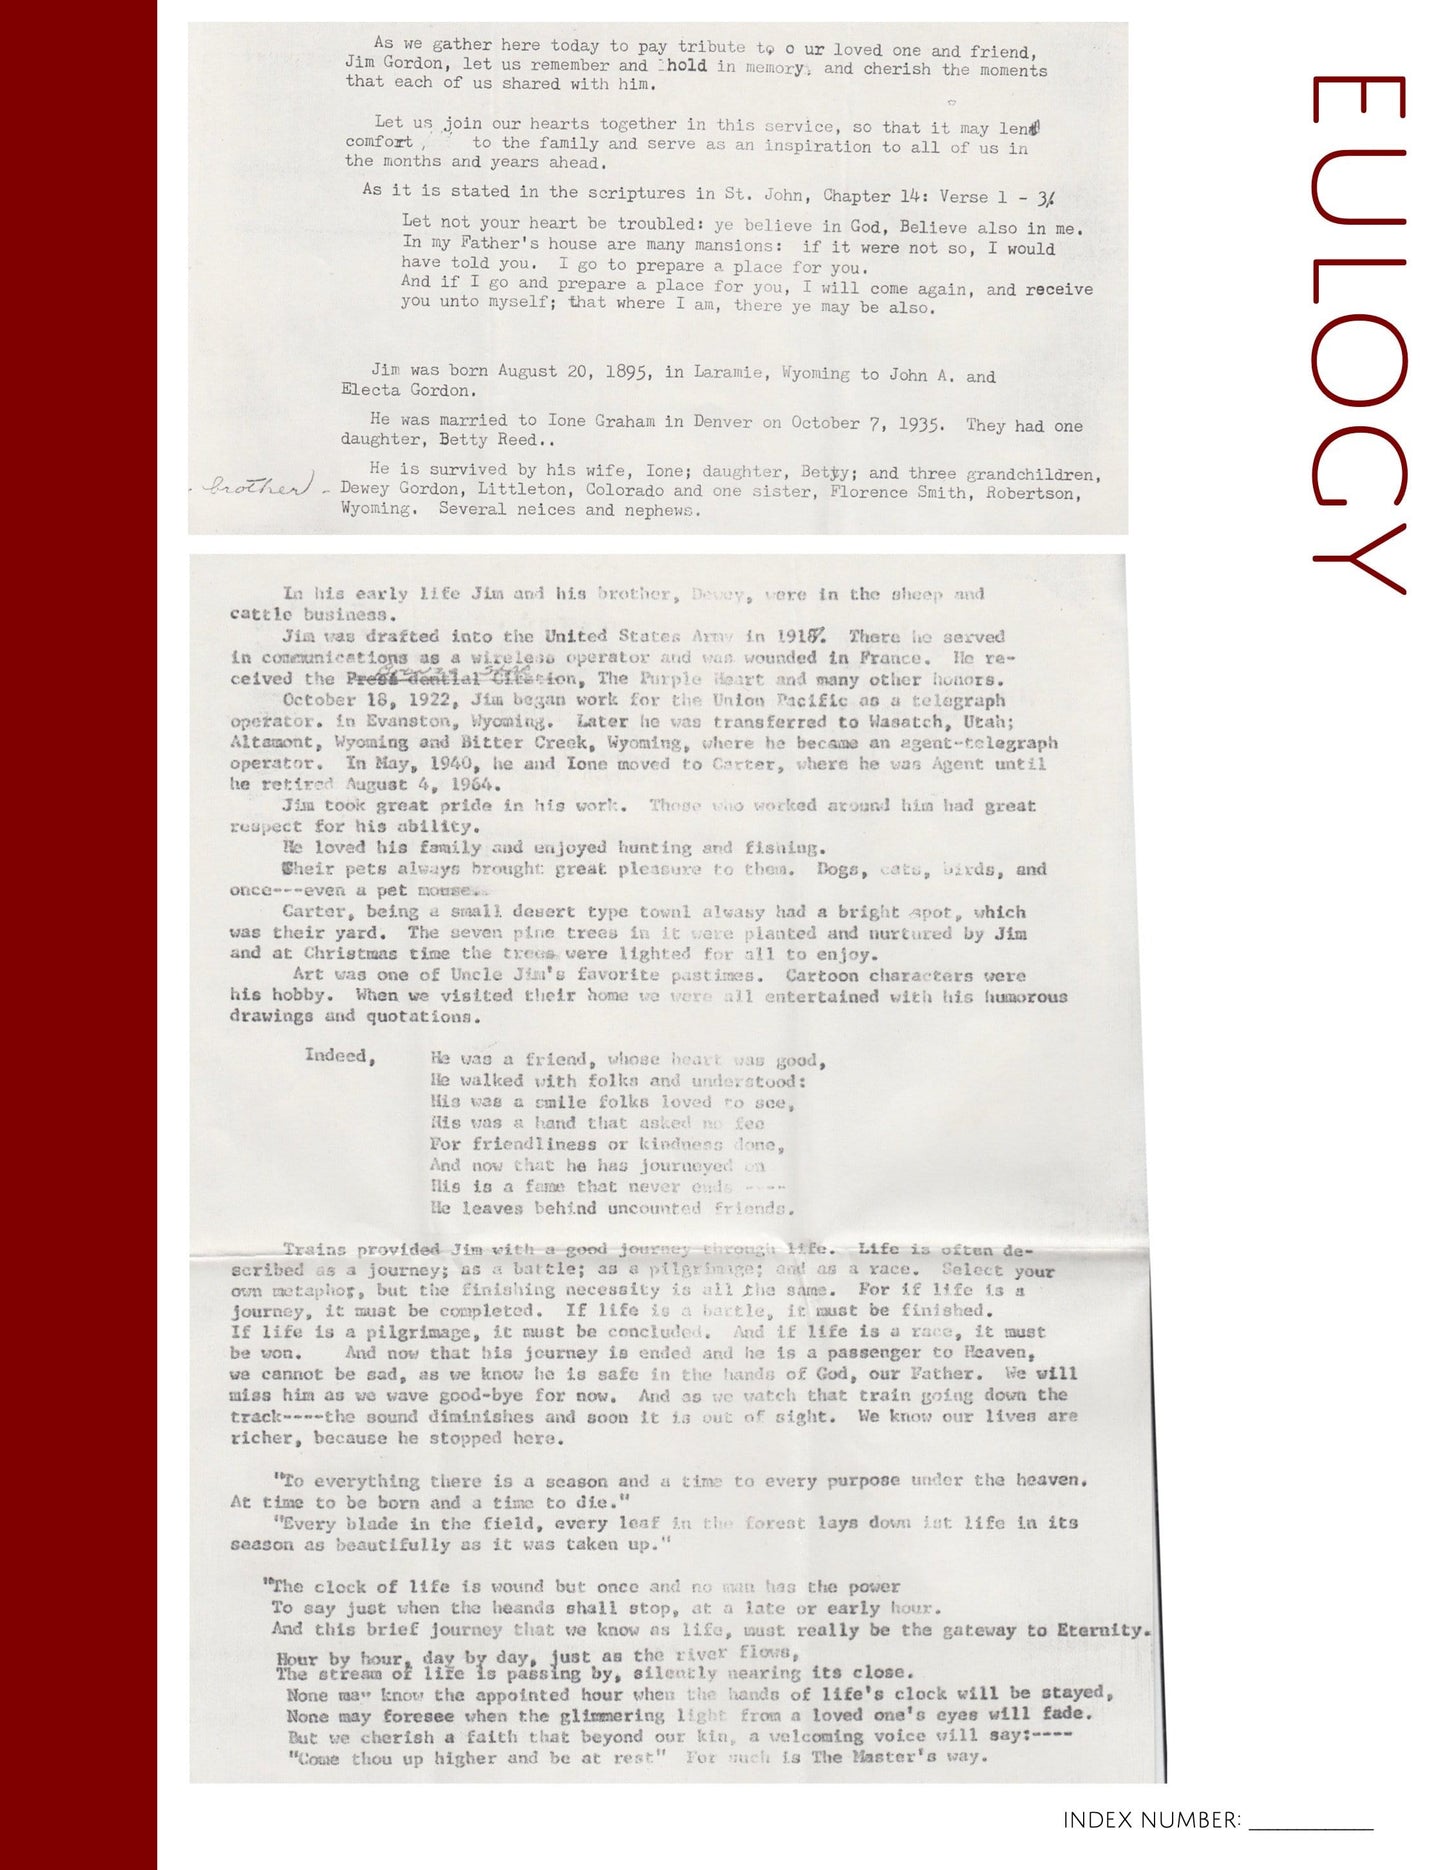 Eulogy: Printable Genealogy Form (Digital Download)